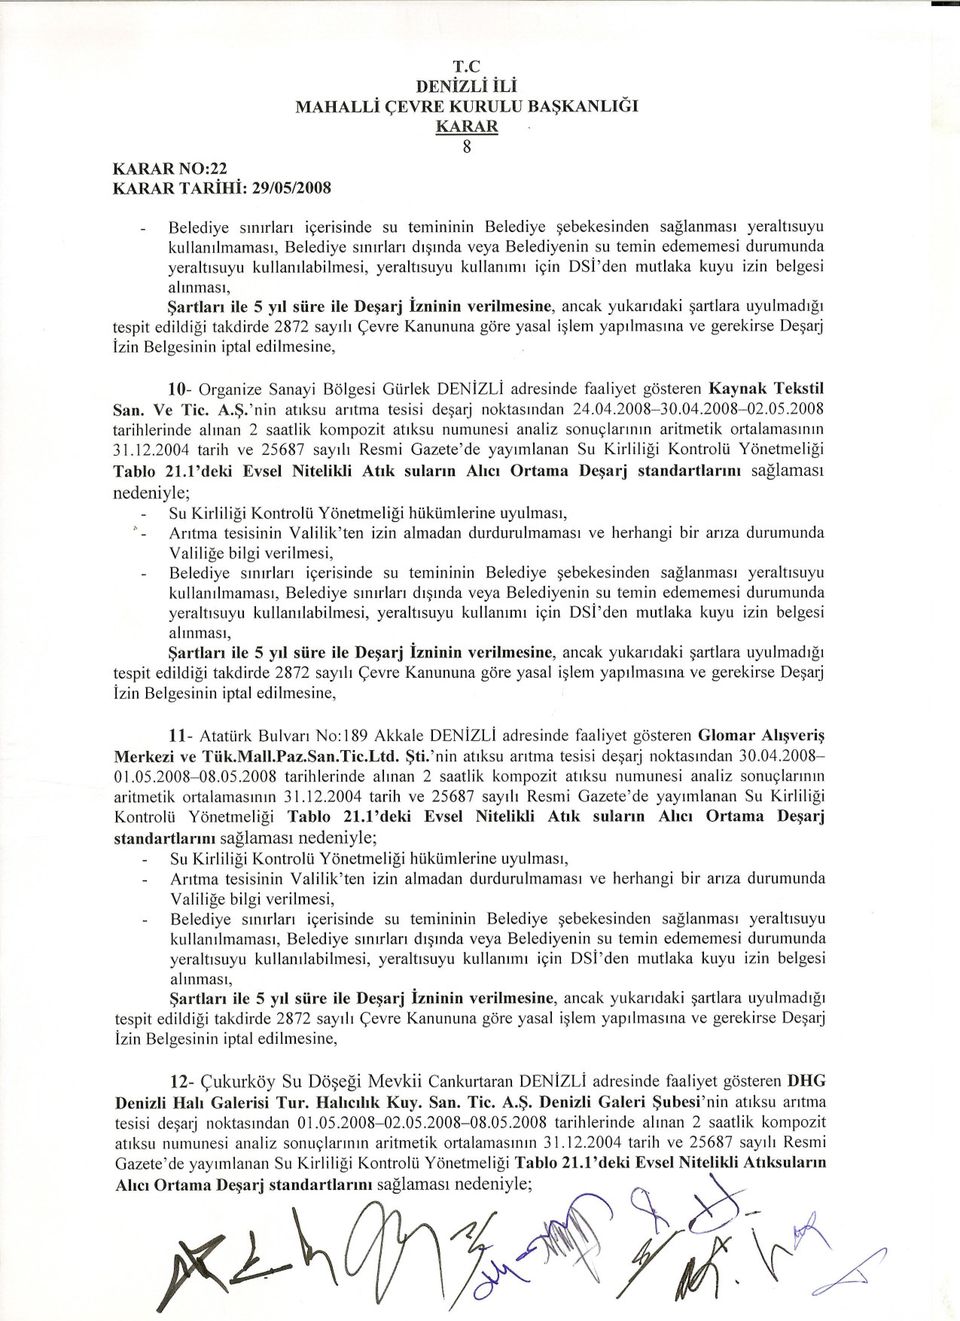 2004 tarih ve 25687 sayili Resmi Gazete'de yayimlanan Su Kirliligi Kontrolü Yönetmeligi Tablo 2Ll'deki Evsel Nitelikli Atik sularin Ahci Ortama Desarj standartlarini saglamasi nedeniyle; 11- Atatürk